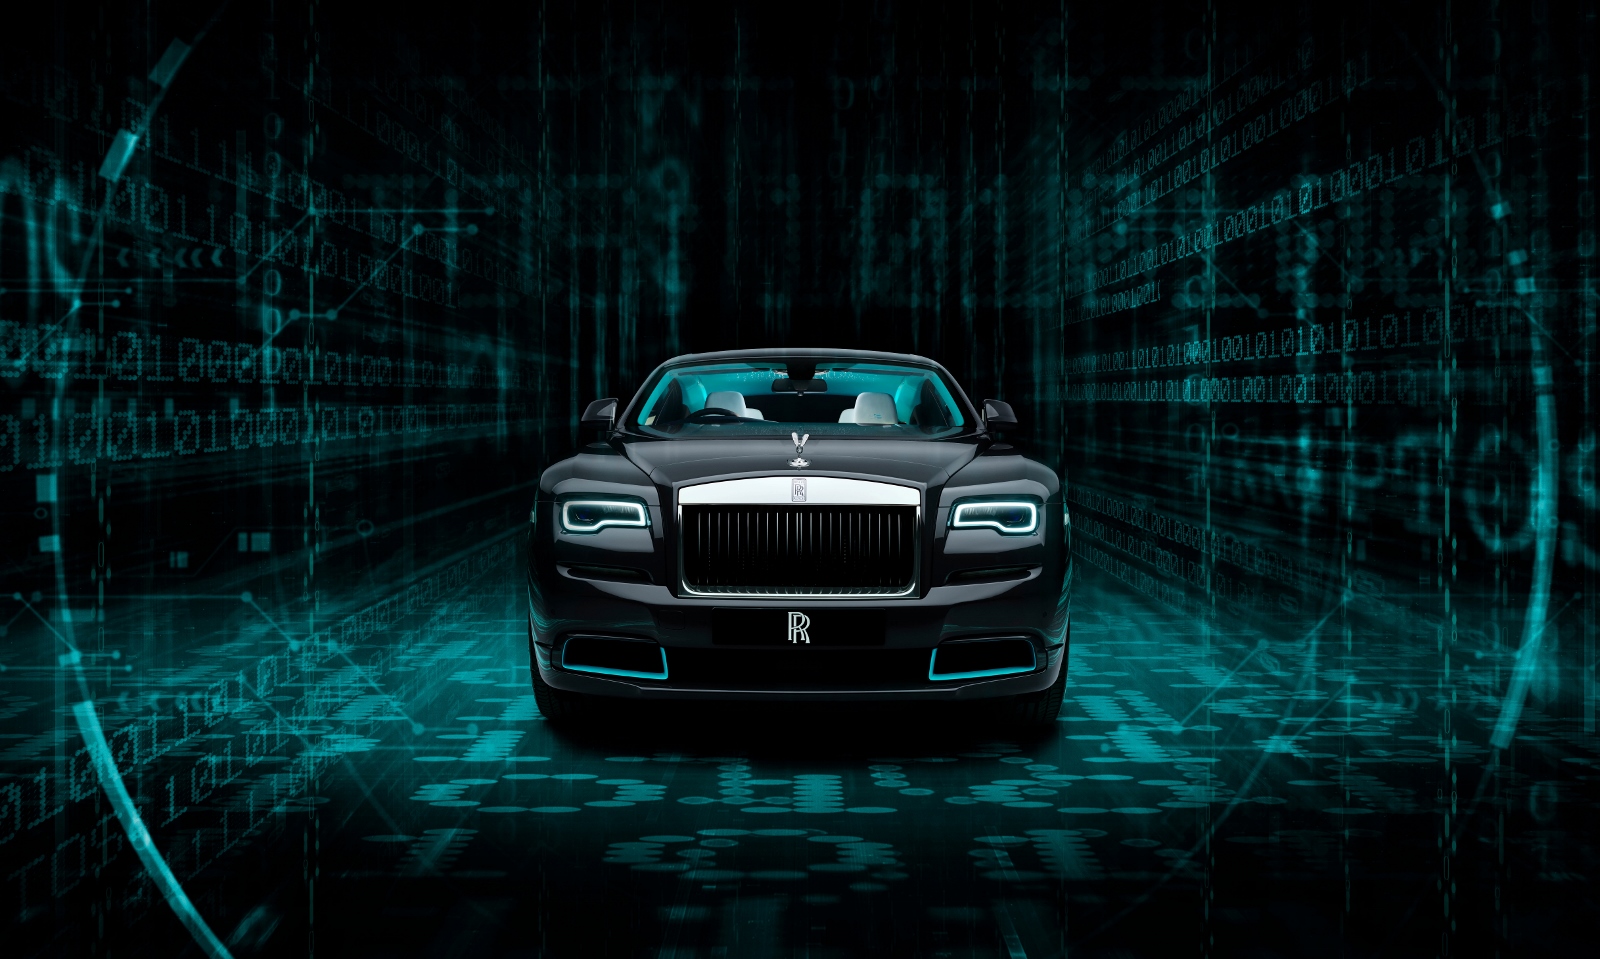 Šifru Rolls Royce Wraith Kryptos poznajú len dvaja ľudia. Vylúštiť ju majú zákazníci